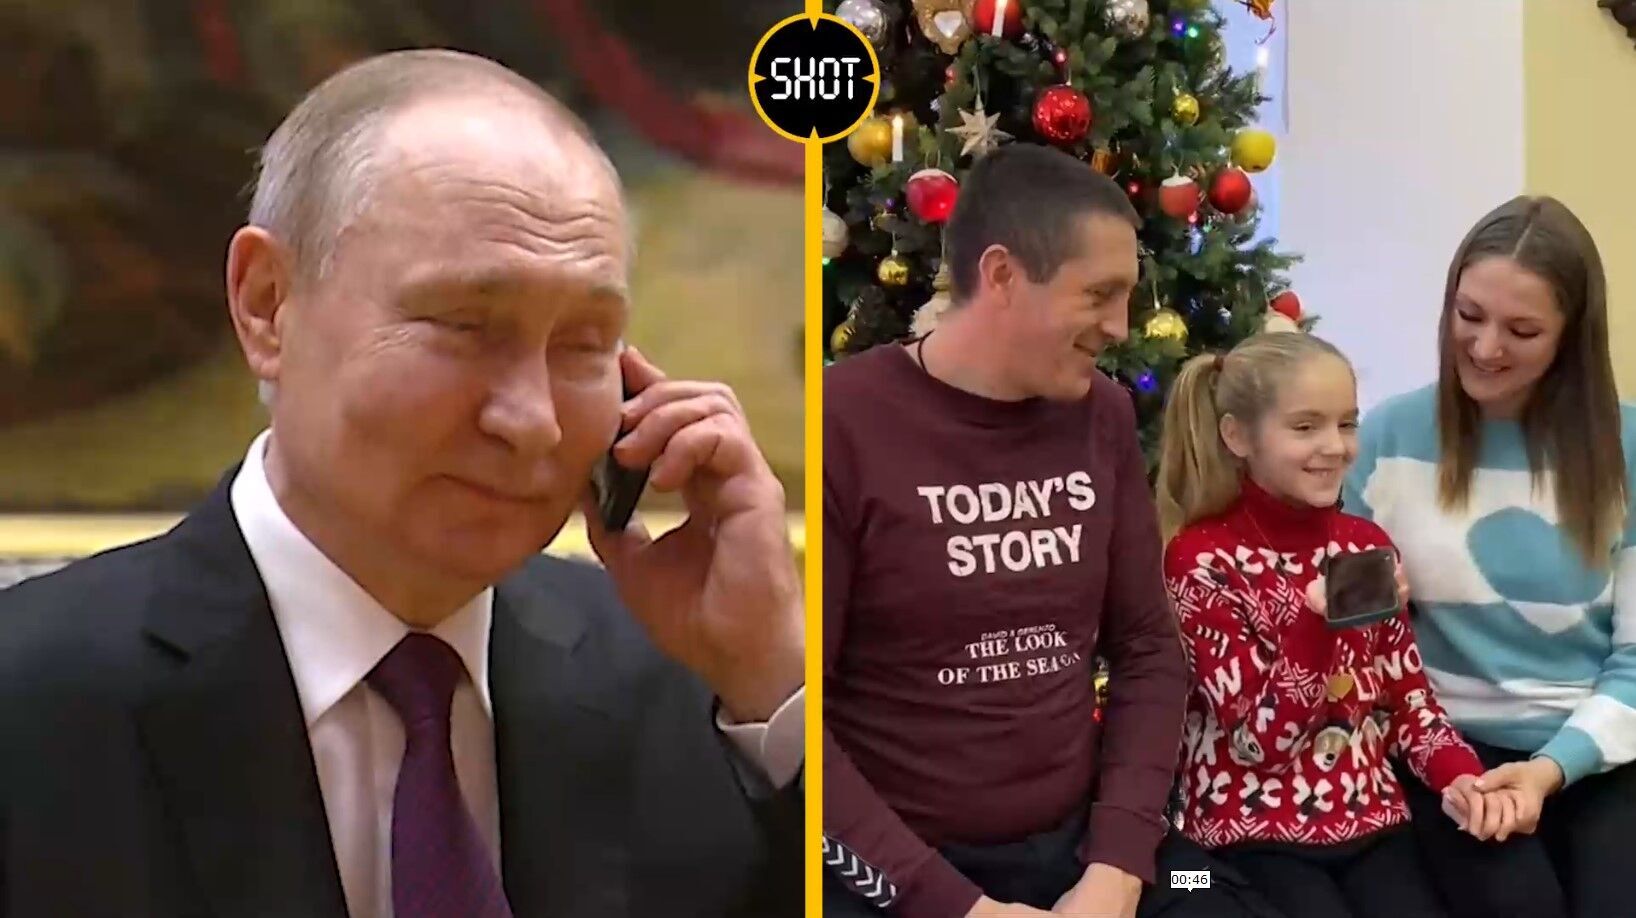 "Огірочків мені пришлеш": Путін на камеру поговорив по телефону з дівчинкою Сашею з Запорізької області. Відео